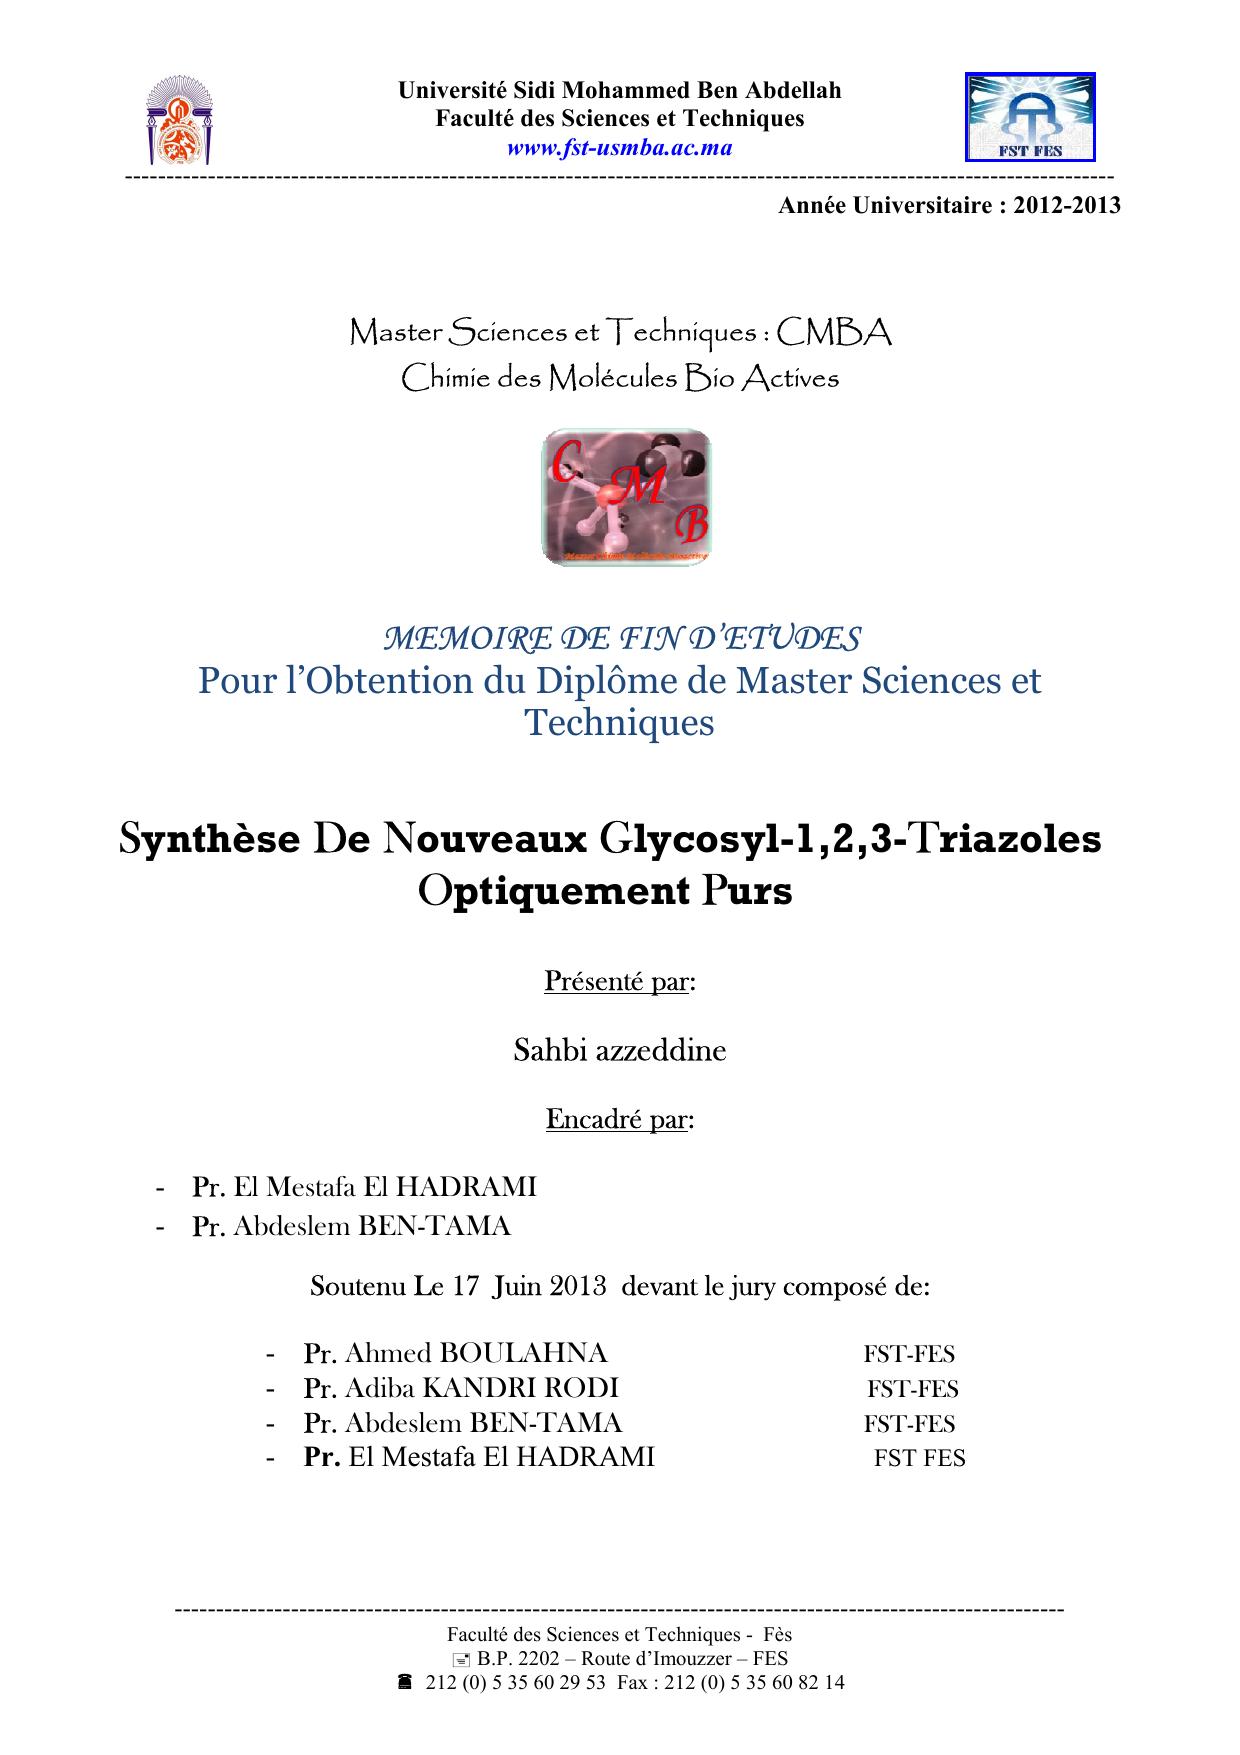 Synthèse De Nouveaux Glycosyl-1,2,3-Triazoles Optiquement Purs